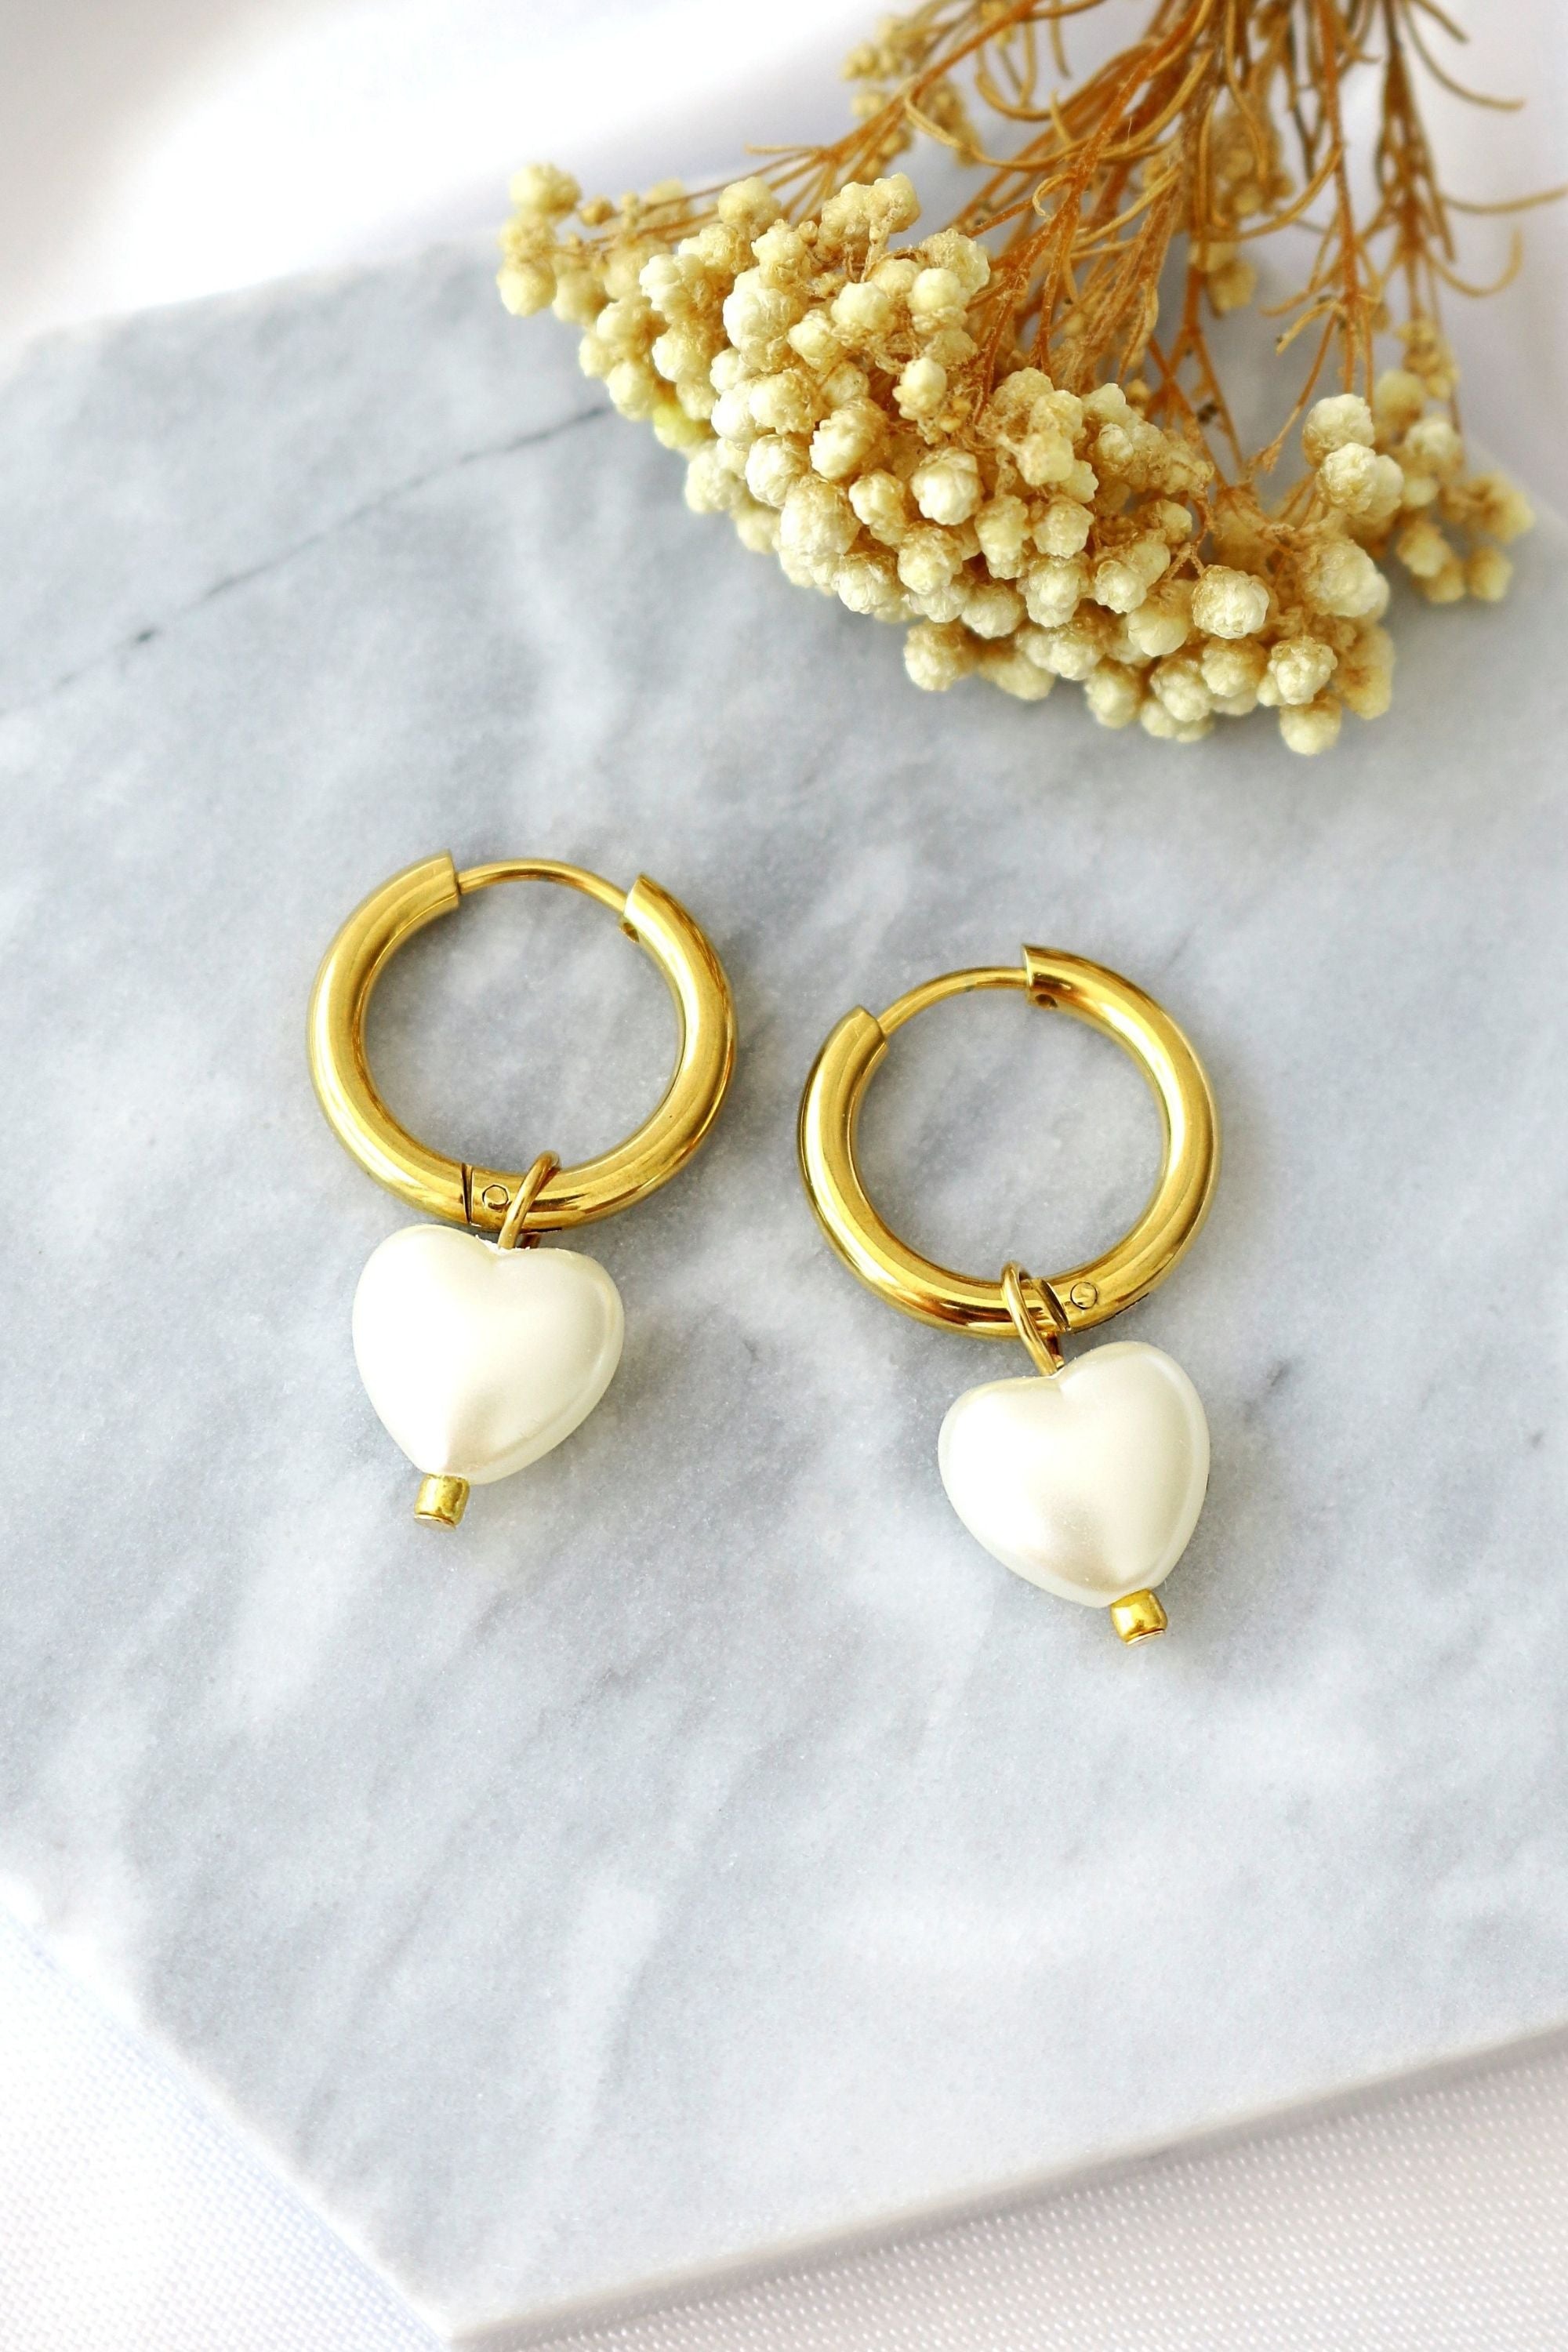 24K Gold-Plated Heart Pearl Hoop Earrings - Hypoallergenic & Handmade in Europe Bijou Her